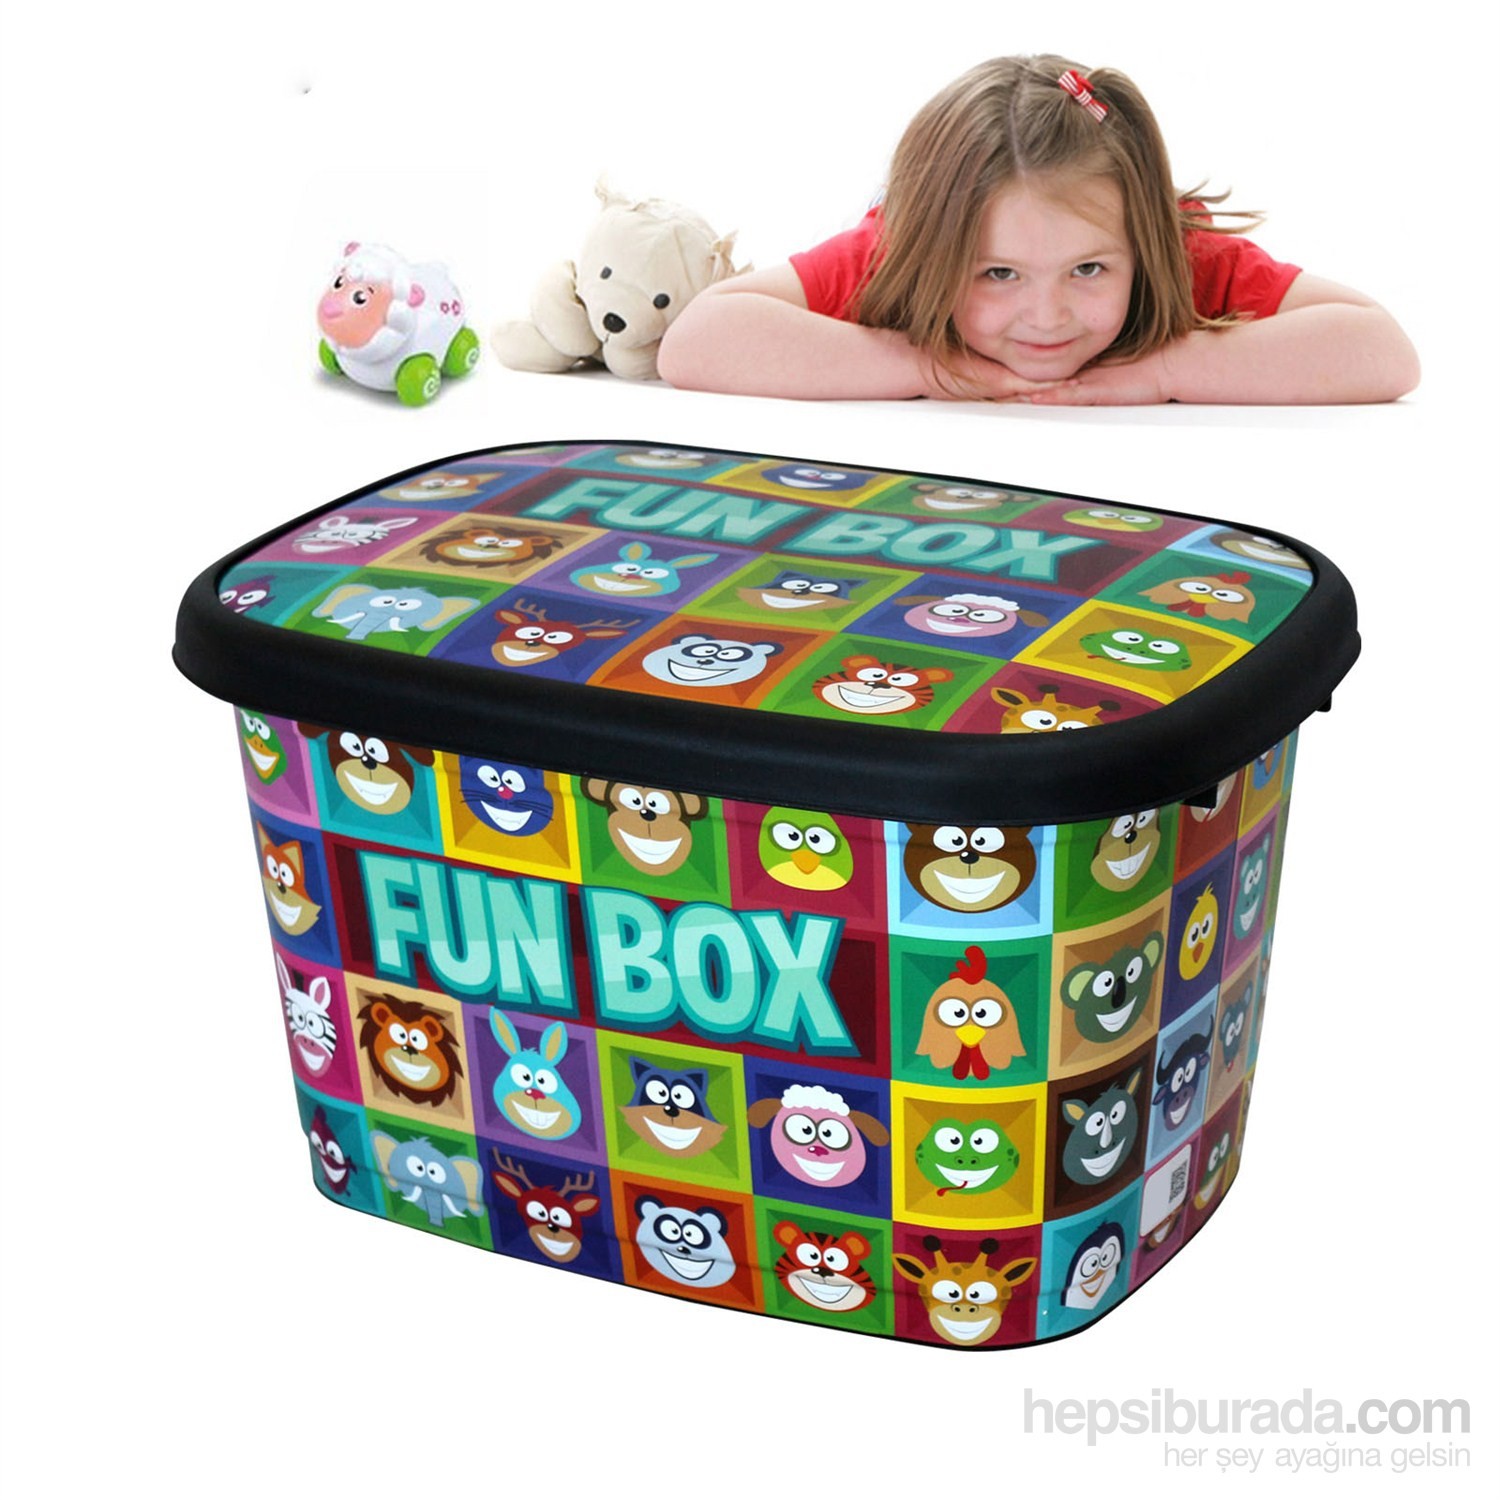 Lt fun. Fun Box. Fun Box бокс для мальчиков 4 года развивающие. Funny Box.